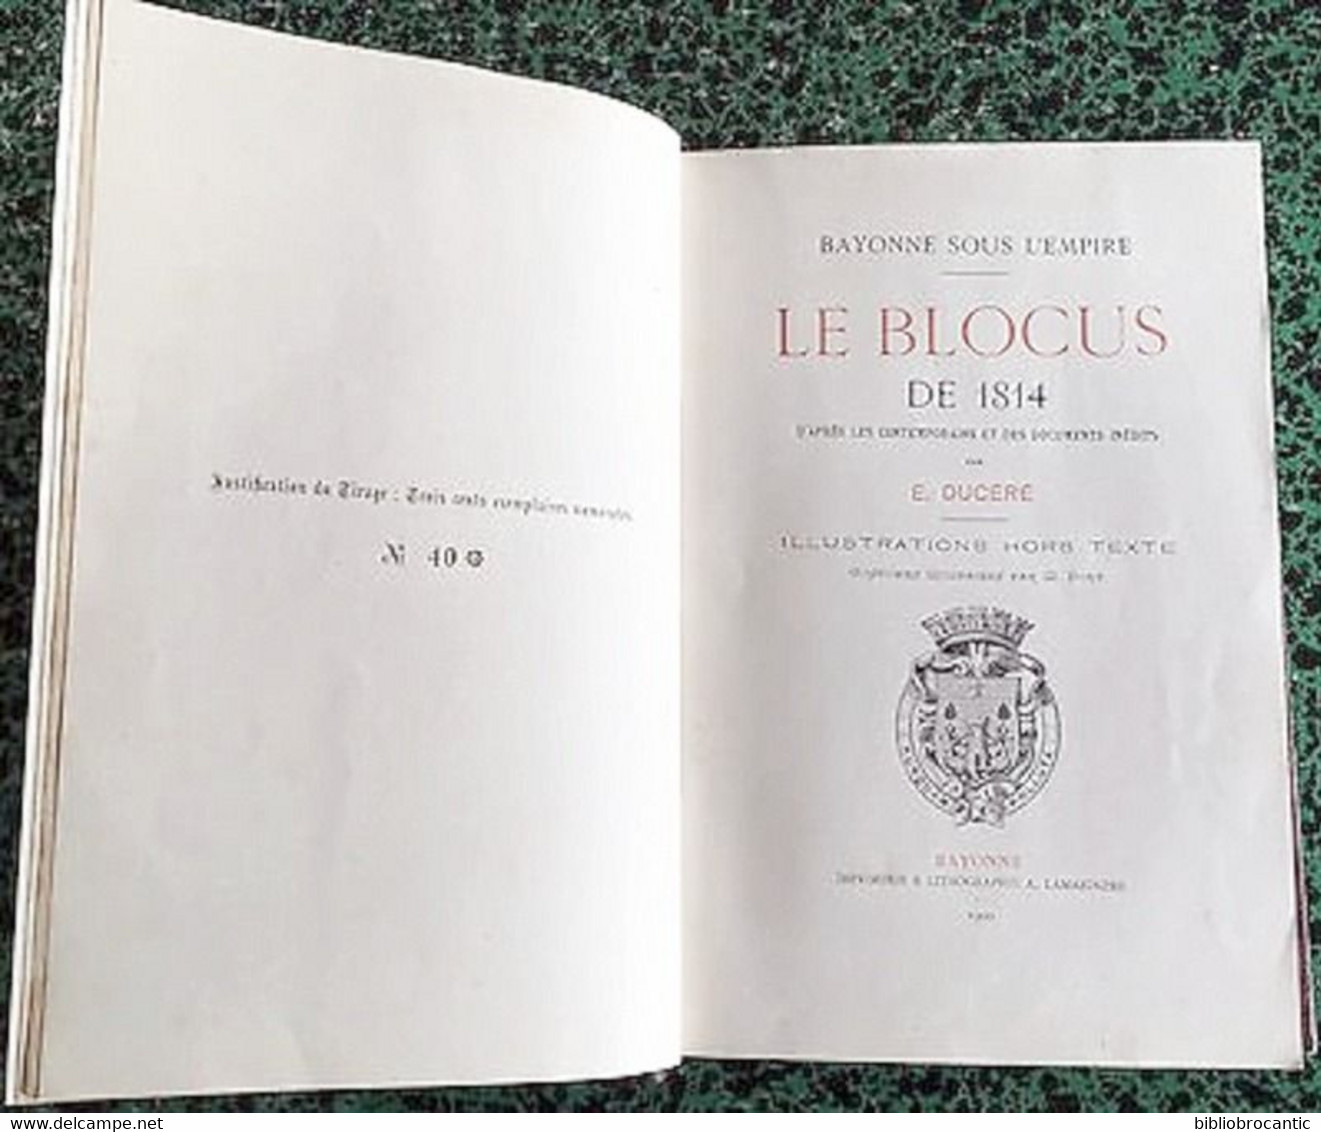 BAYONNE SOUS L'EMPIRE * LE BLOCUS DE 1814 *par Edouard DUCERE E.O. 1900 Exemplaire N°40/300 - Baskenland